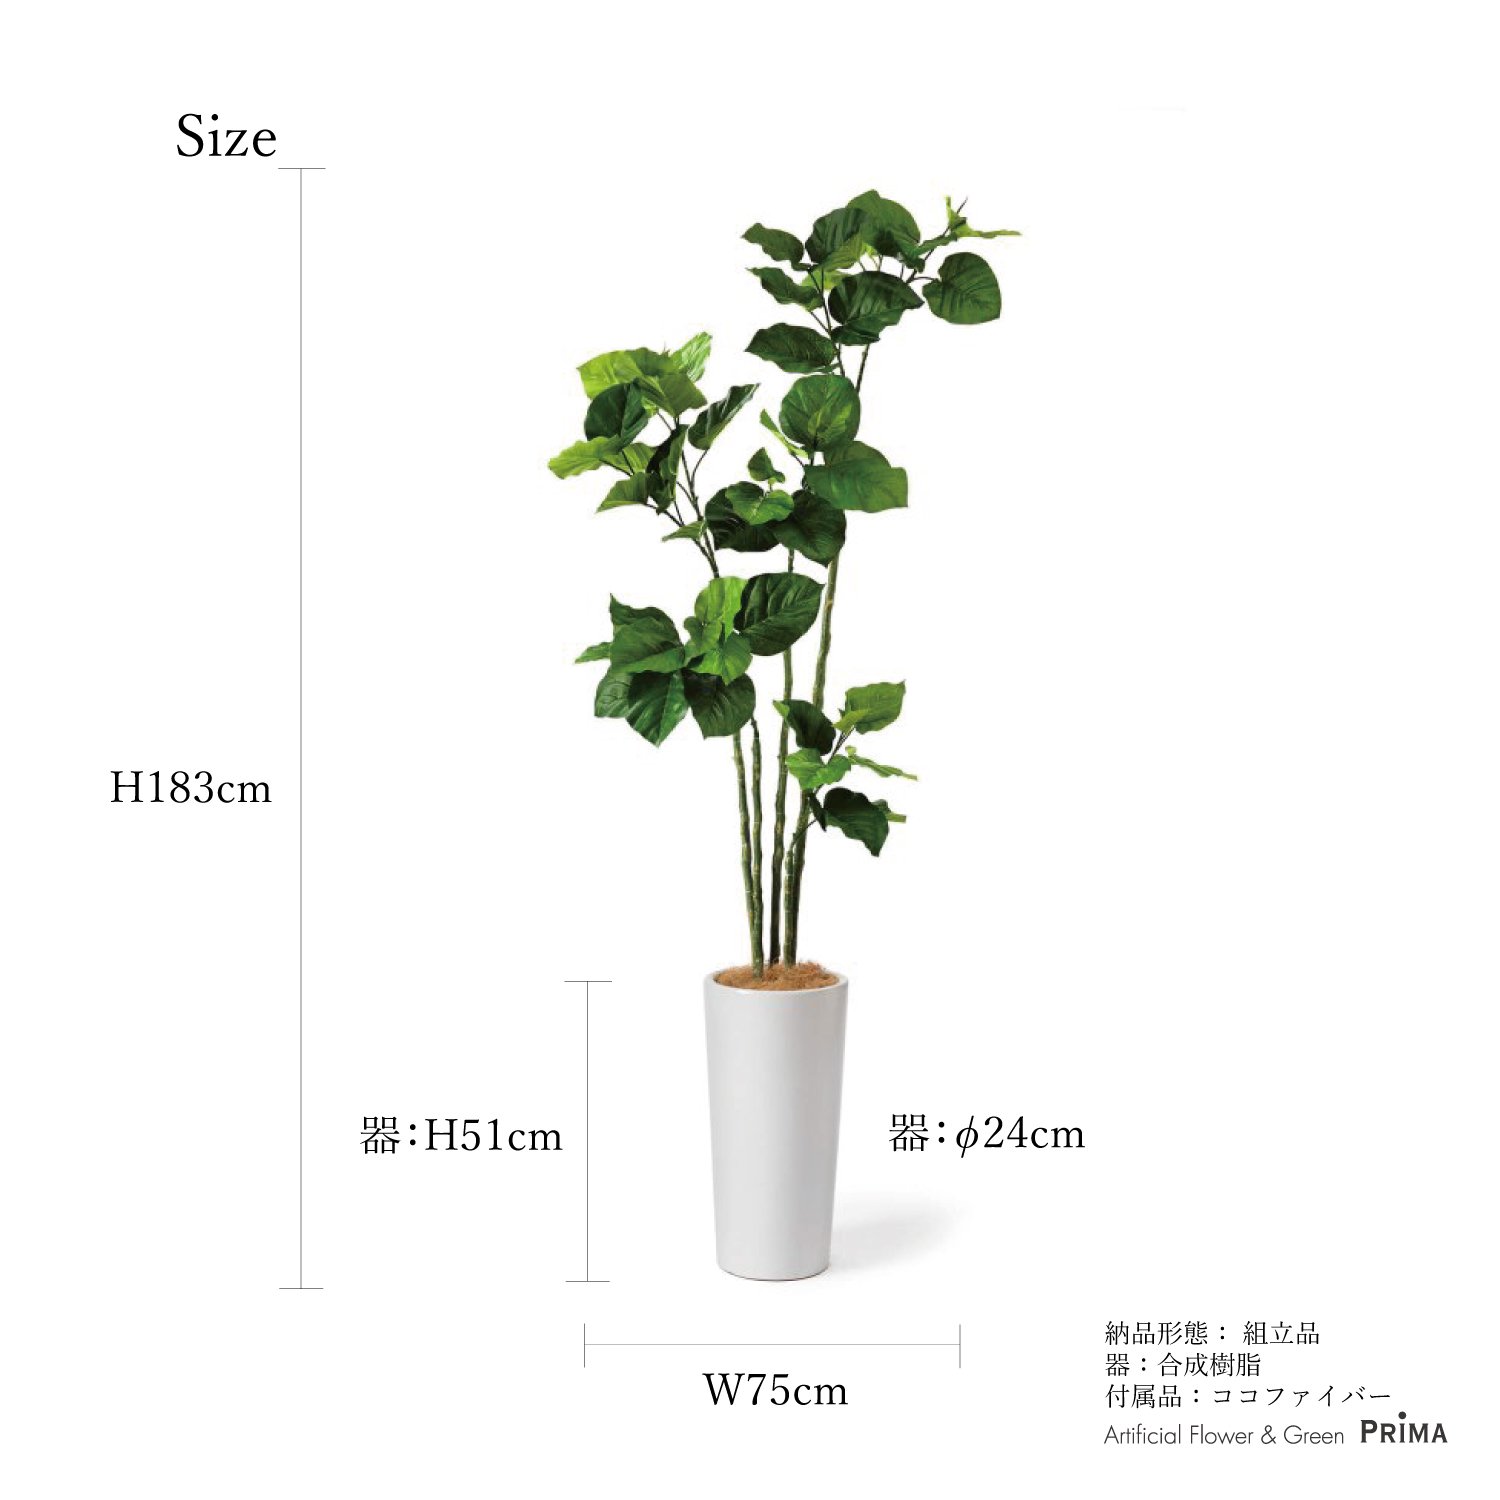 ウンベラータ シリンダーポット H183cm 観葉植物 フェイクグリーン eco 【別倉庫直送品】 